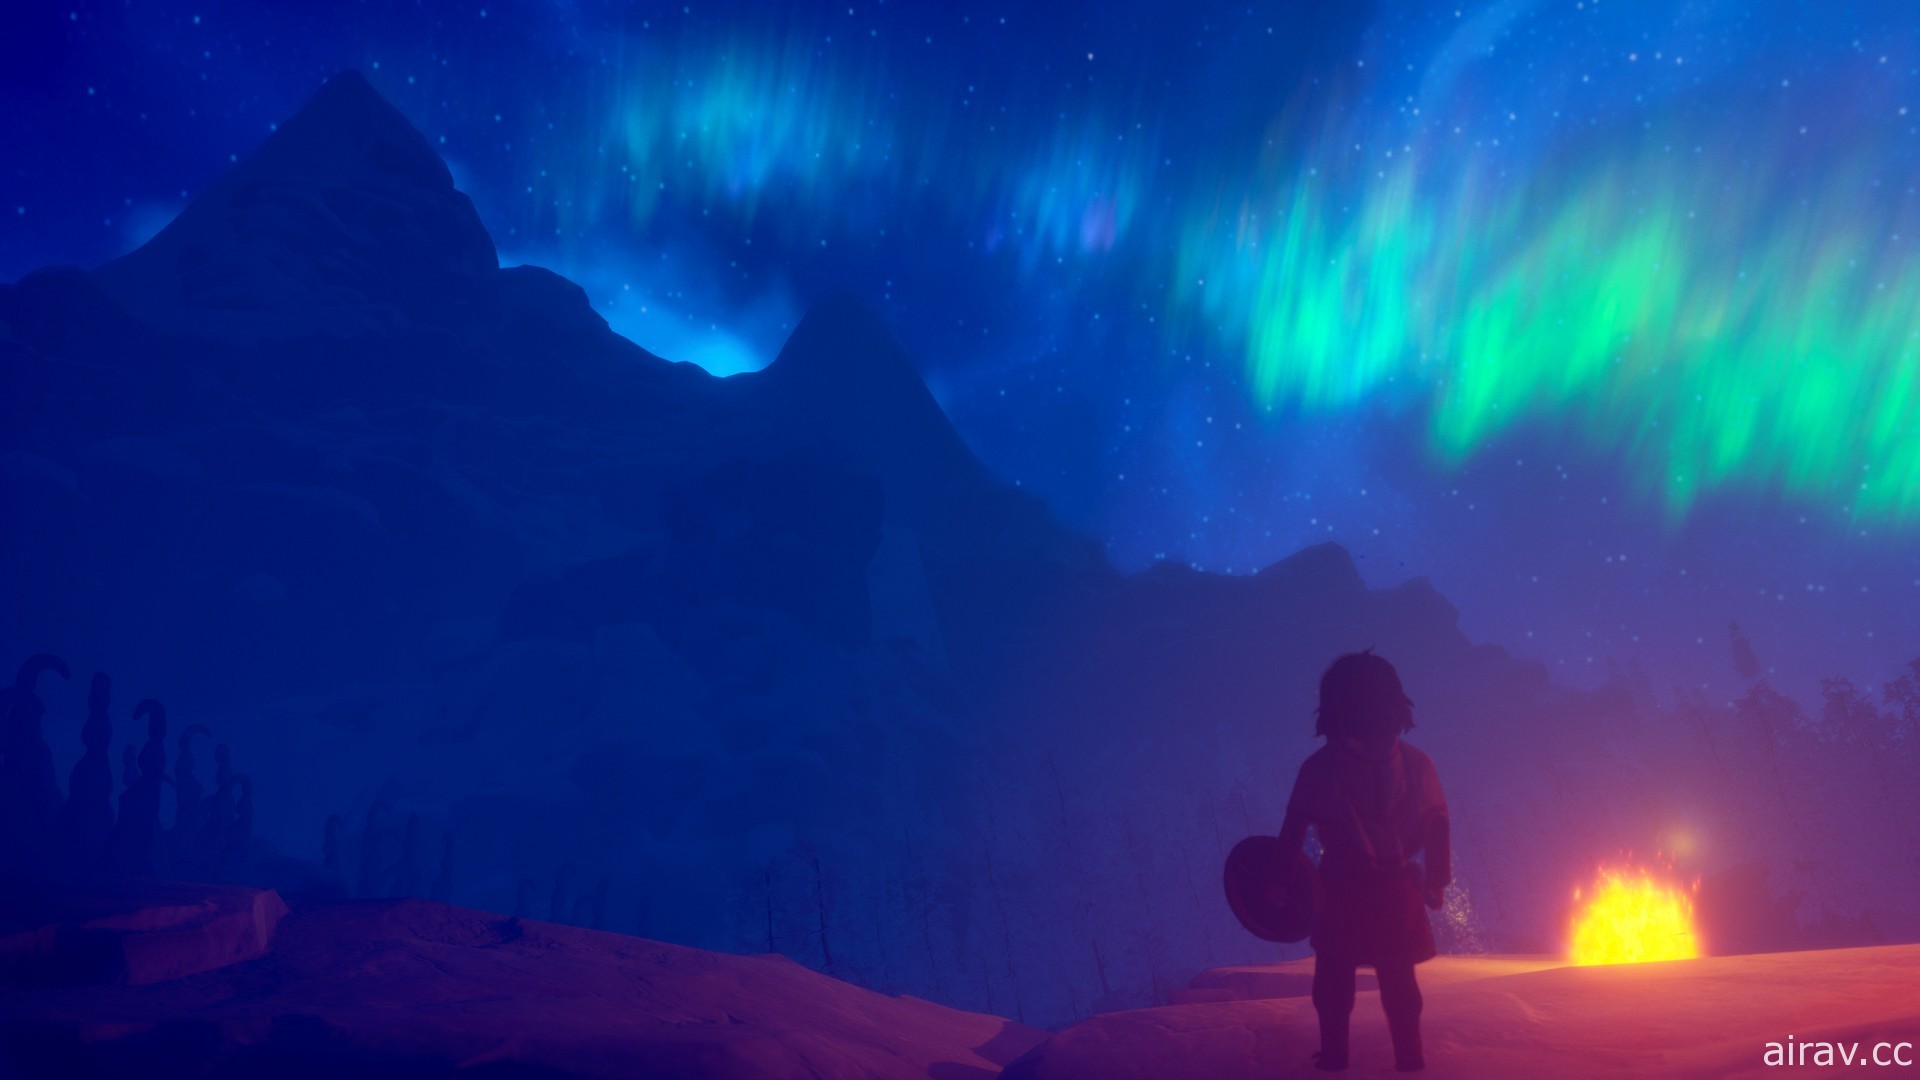 敘事冒險新作《極夜 降雪》曝光 探索北極薩米族故事及文化